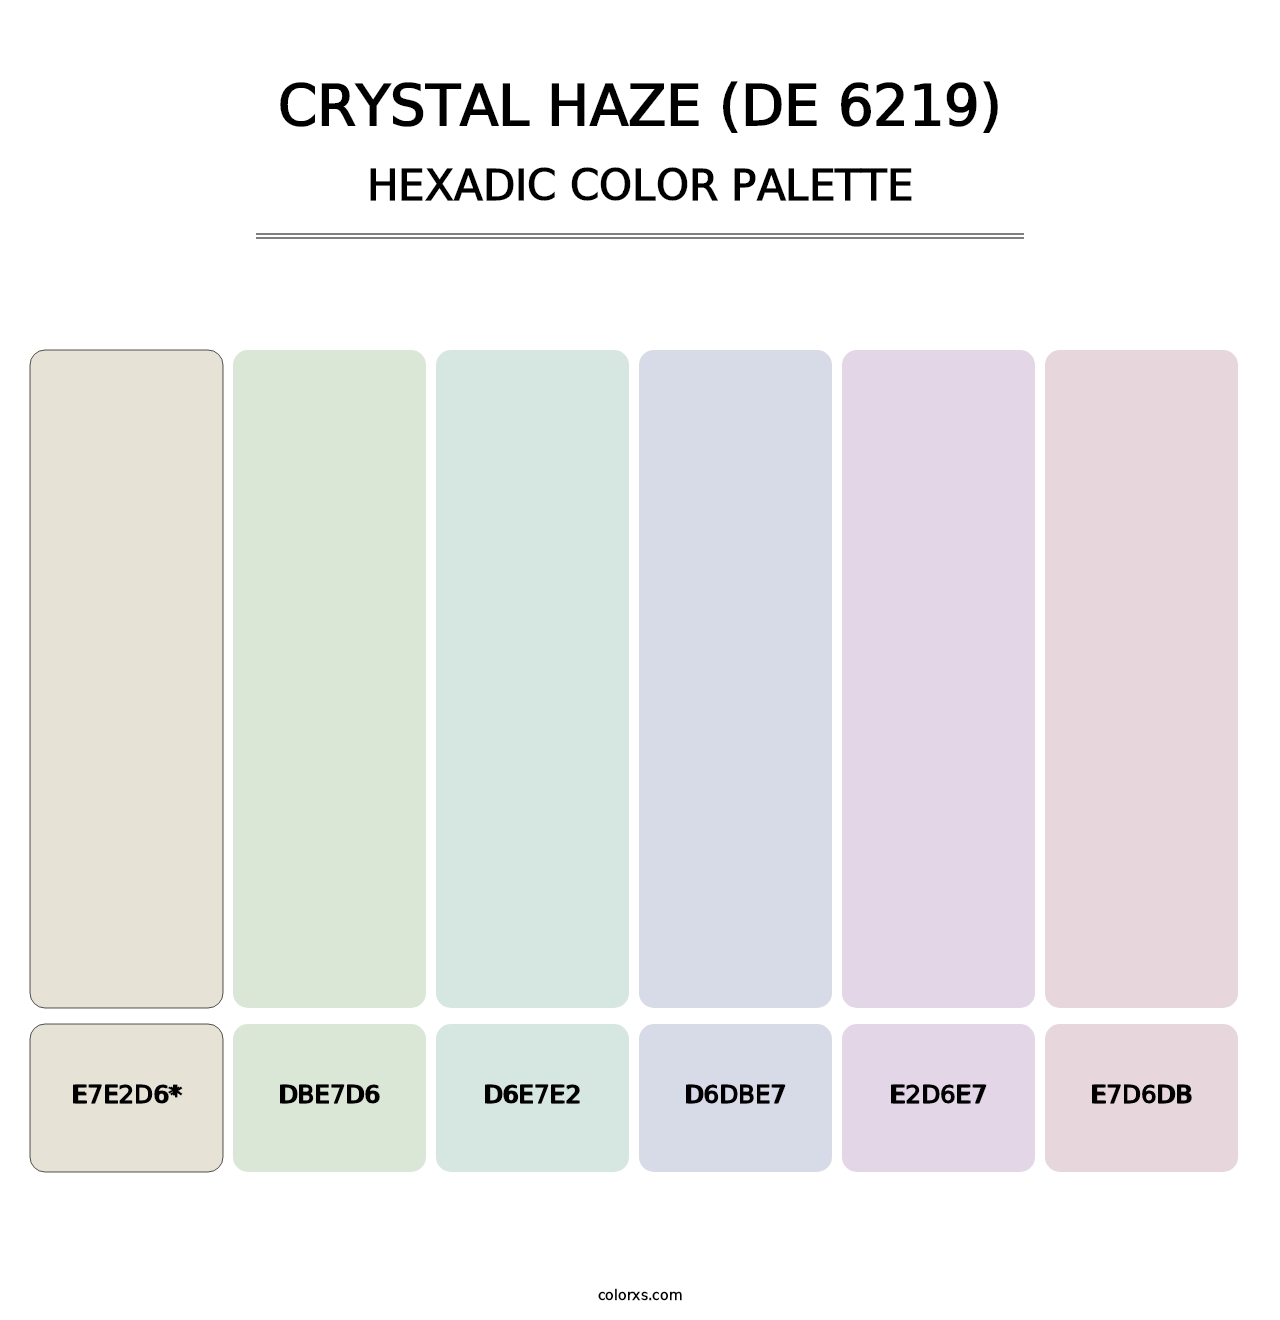 Crystal Haze (DE 6219) - Hexadic Color Palette